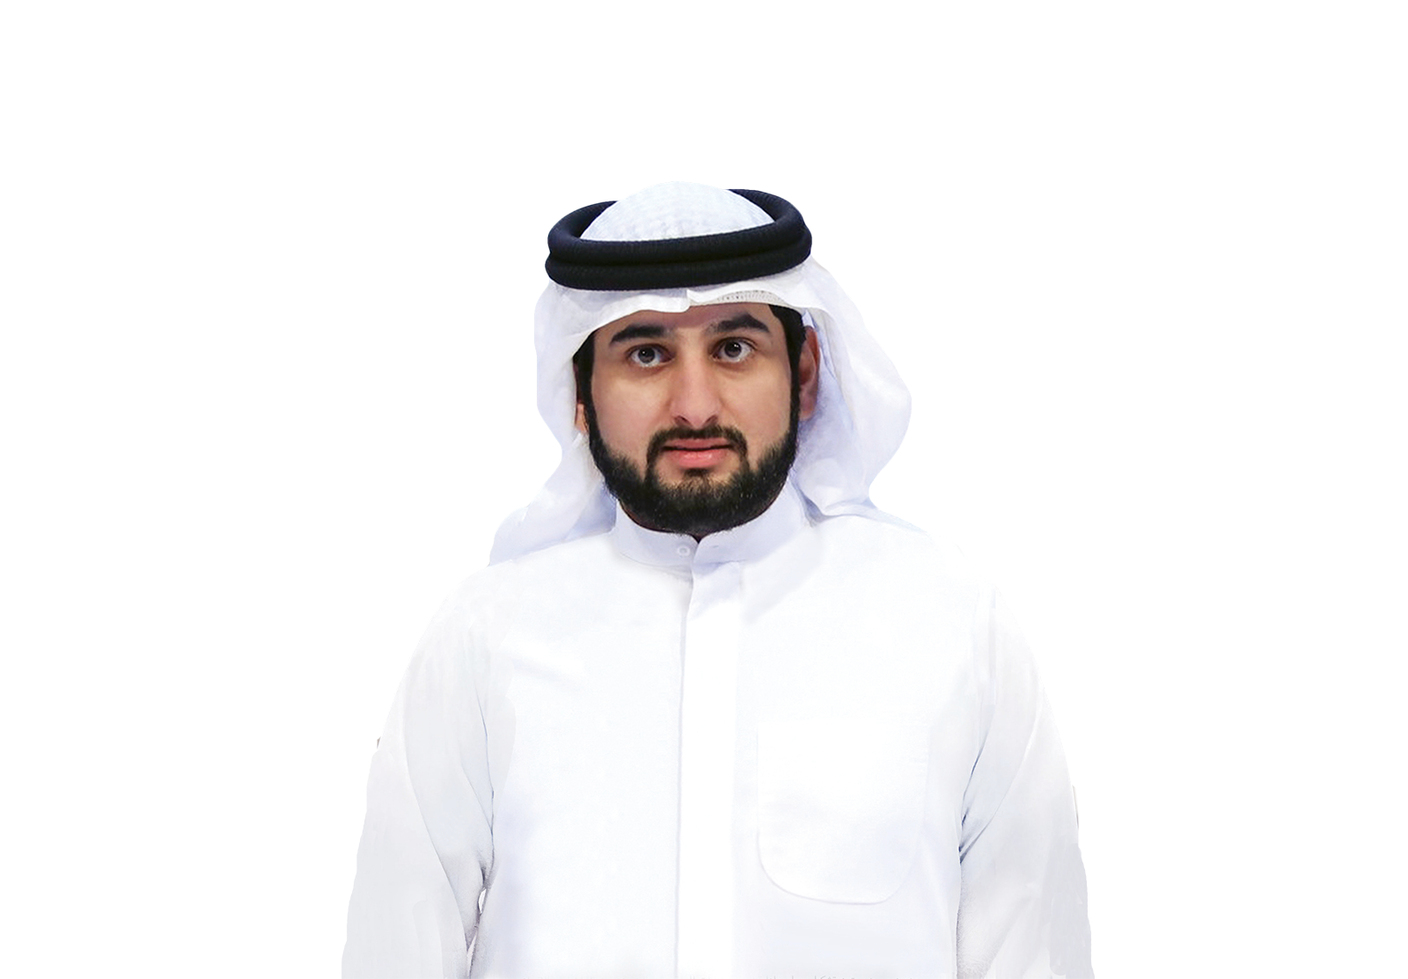 أحمد بن محمد: فخور بكوادرنا الوطنية والشابة التي تمثل الركيزة لتحقيق مستهدفات أجندة دبي الاقتصادية